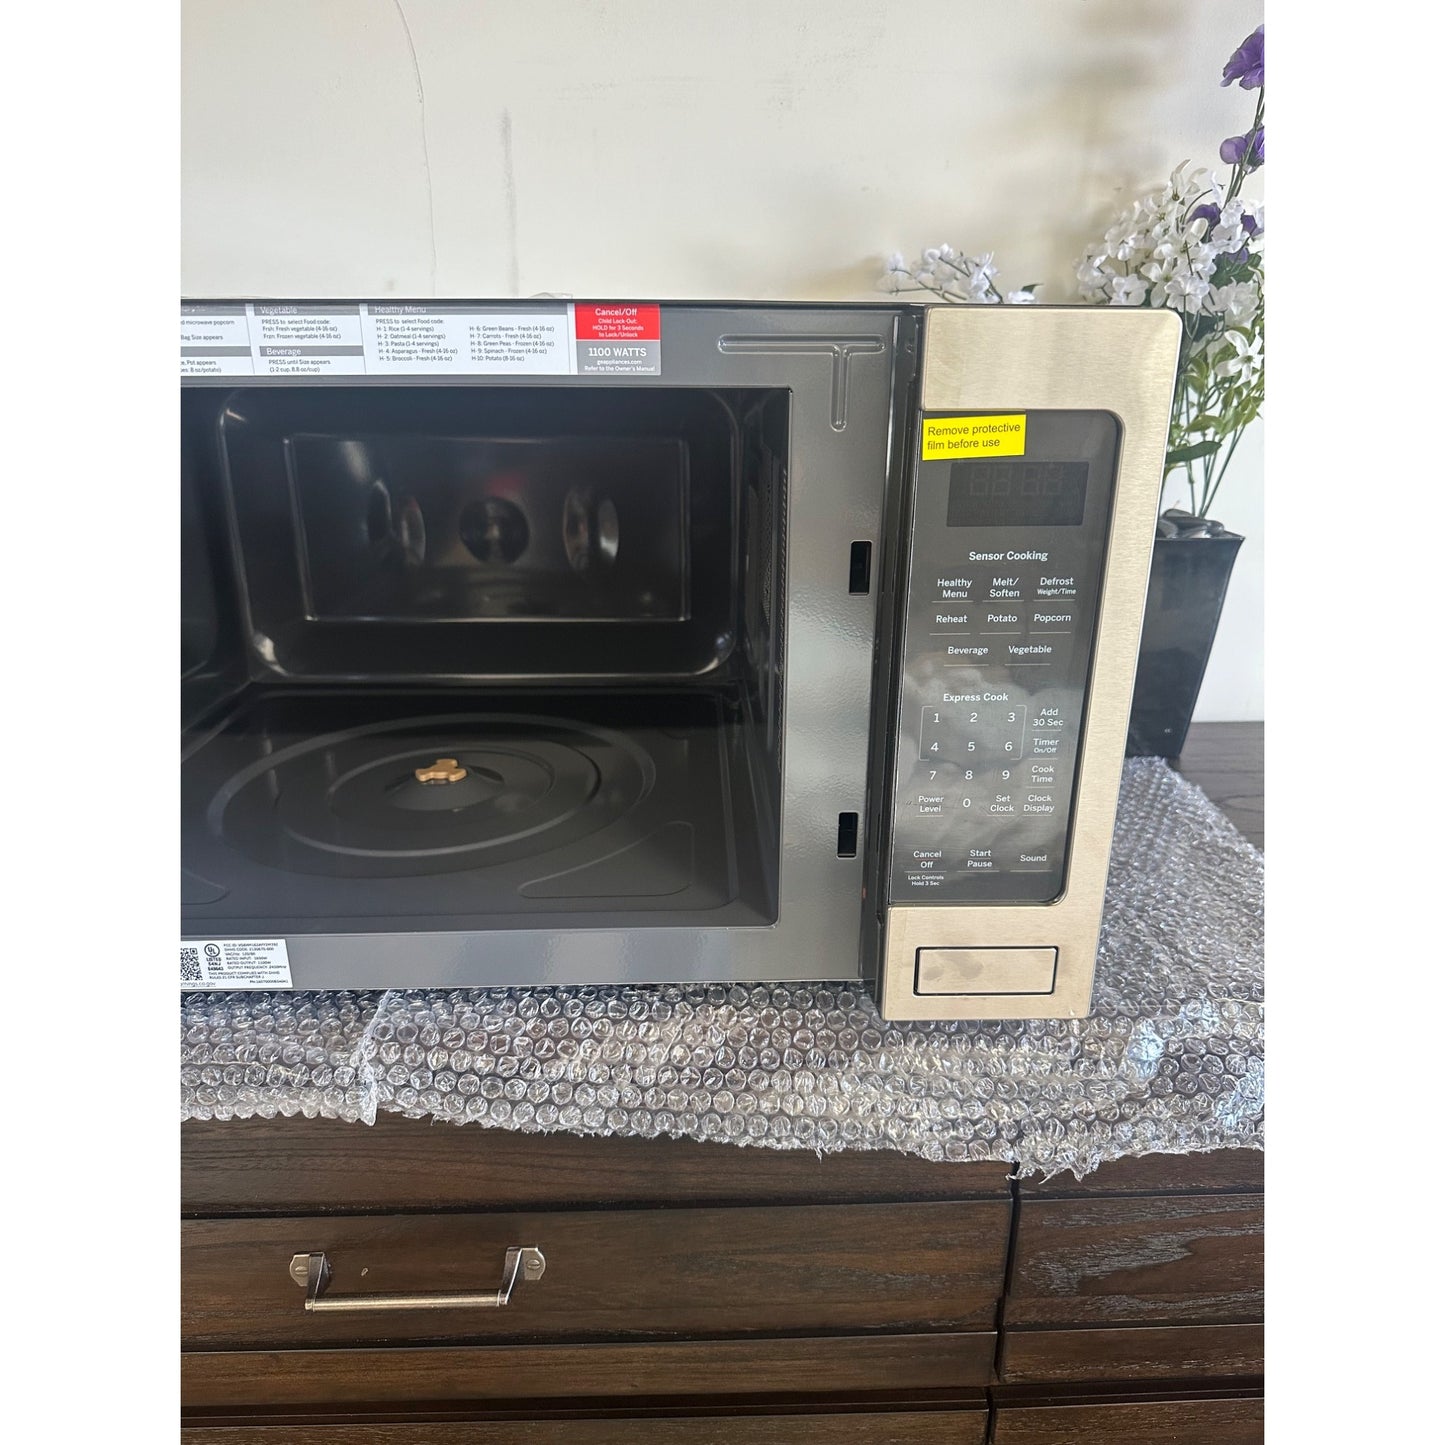 GE countertop microwave 2.2 cu ft